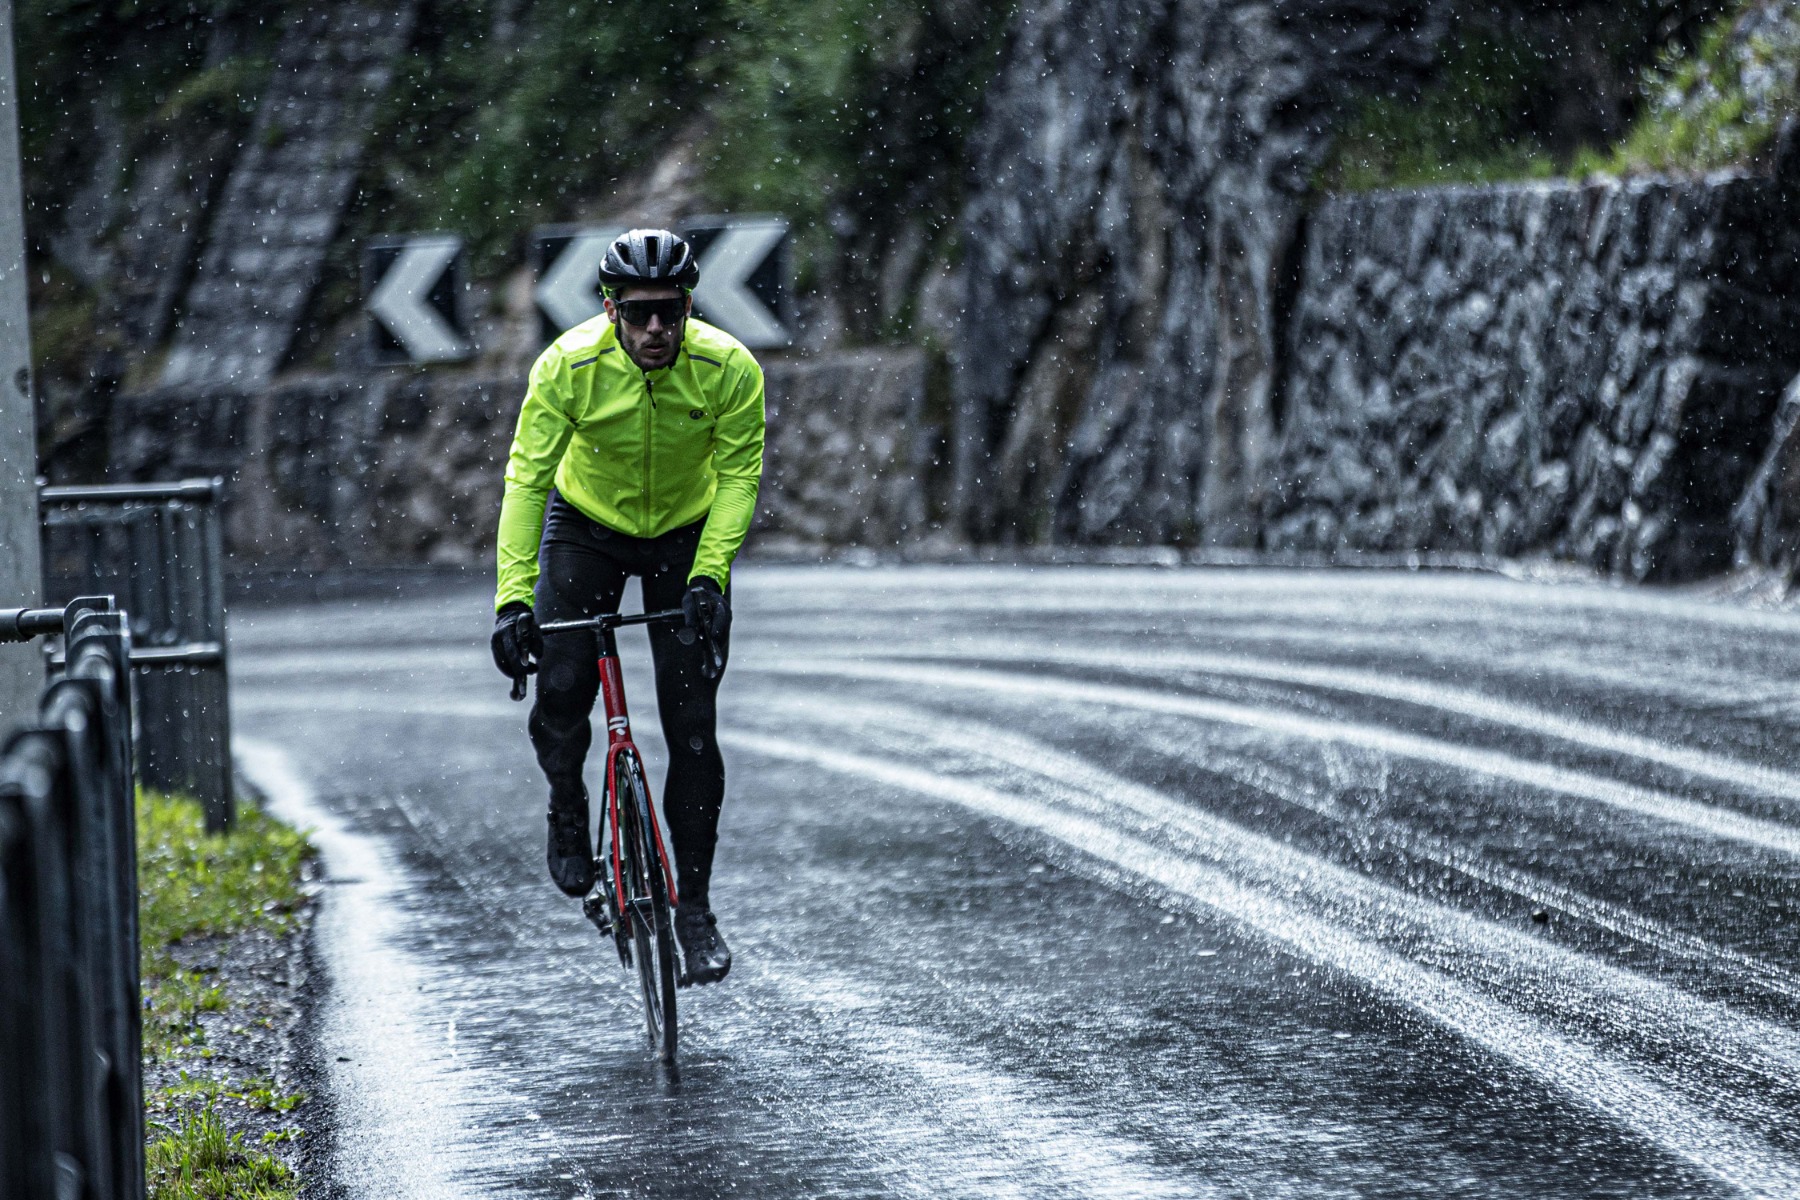 Wielrenner in geel Rogelli regenjack fietst droog door een regenbui.